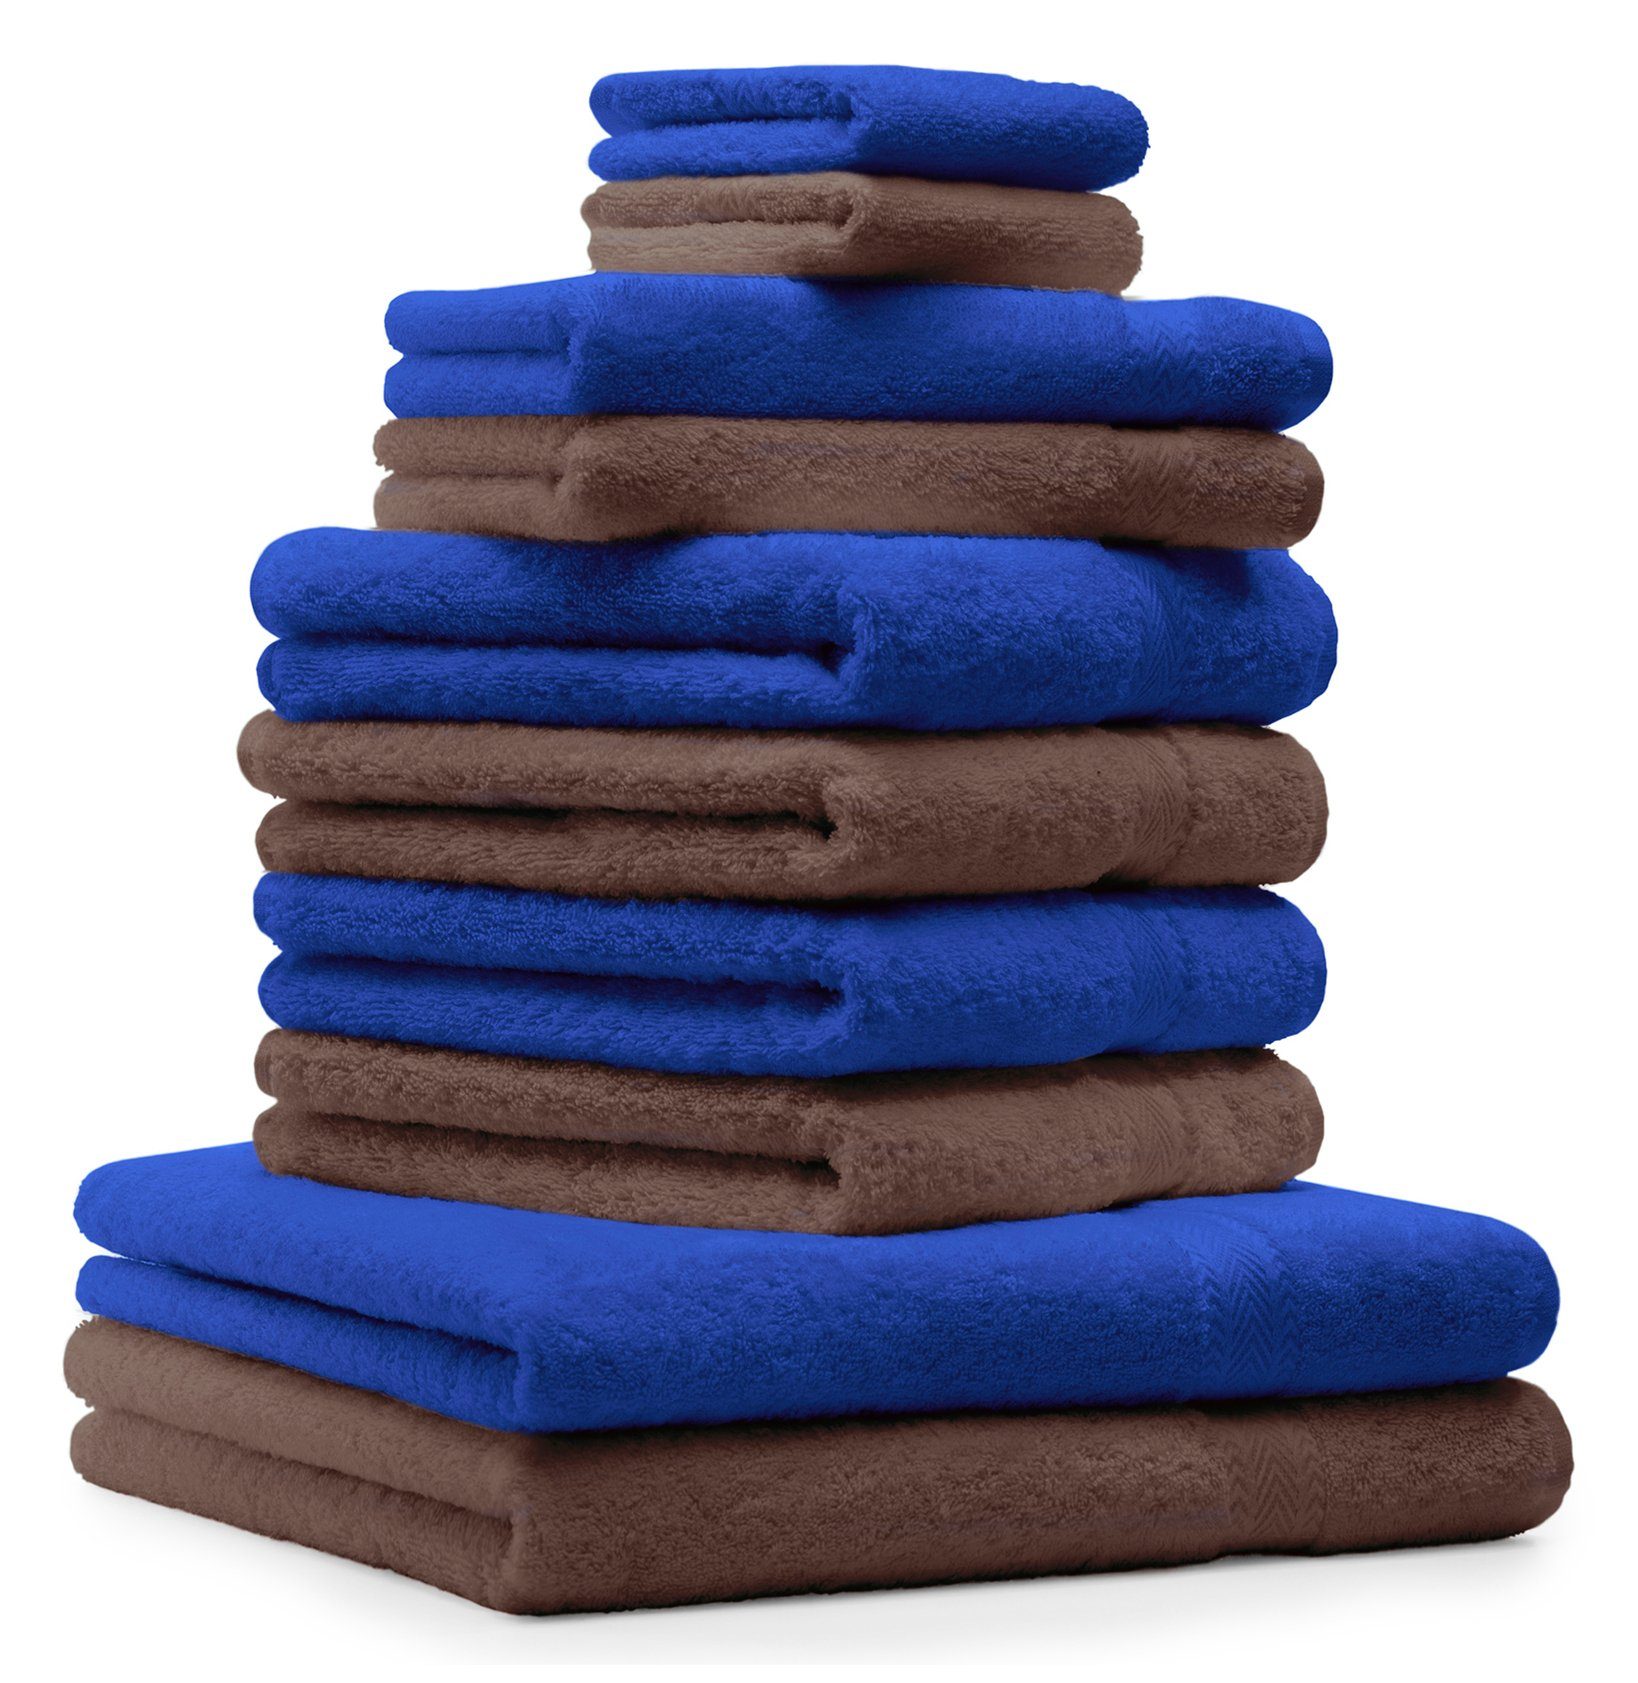 Betz Handtuch Set 10-TLG. Handtuch-Set Premium Farbe Royalblau & Nussbraun, 100% Baumwolle, (10-tlg)